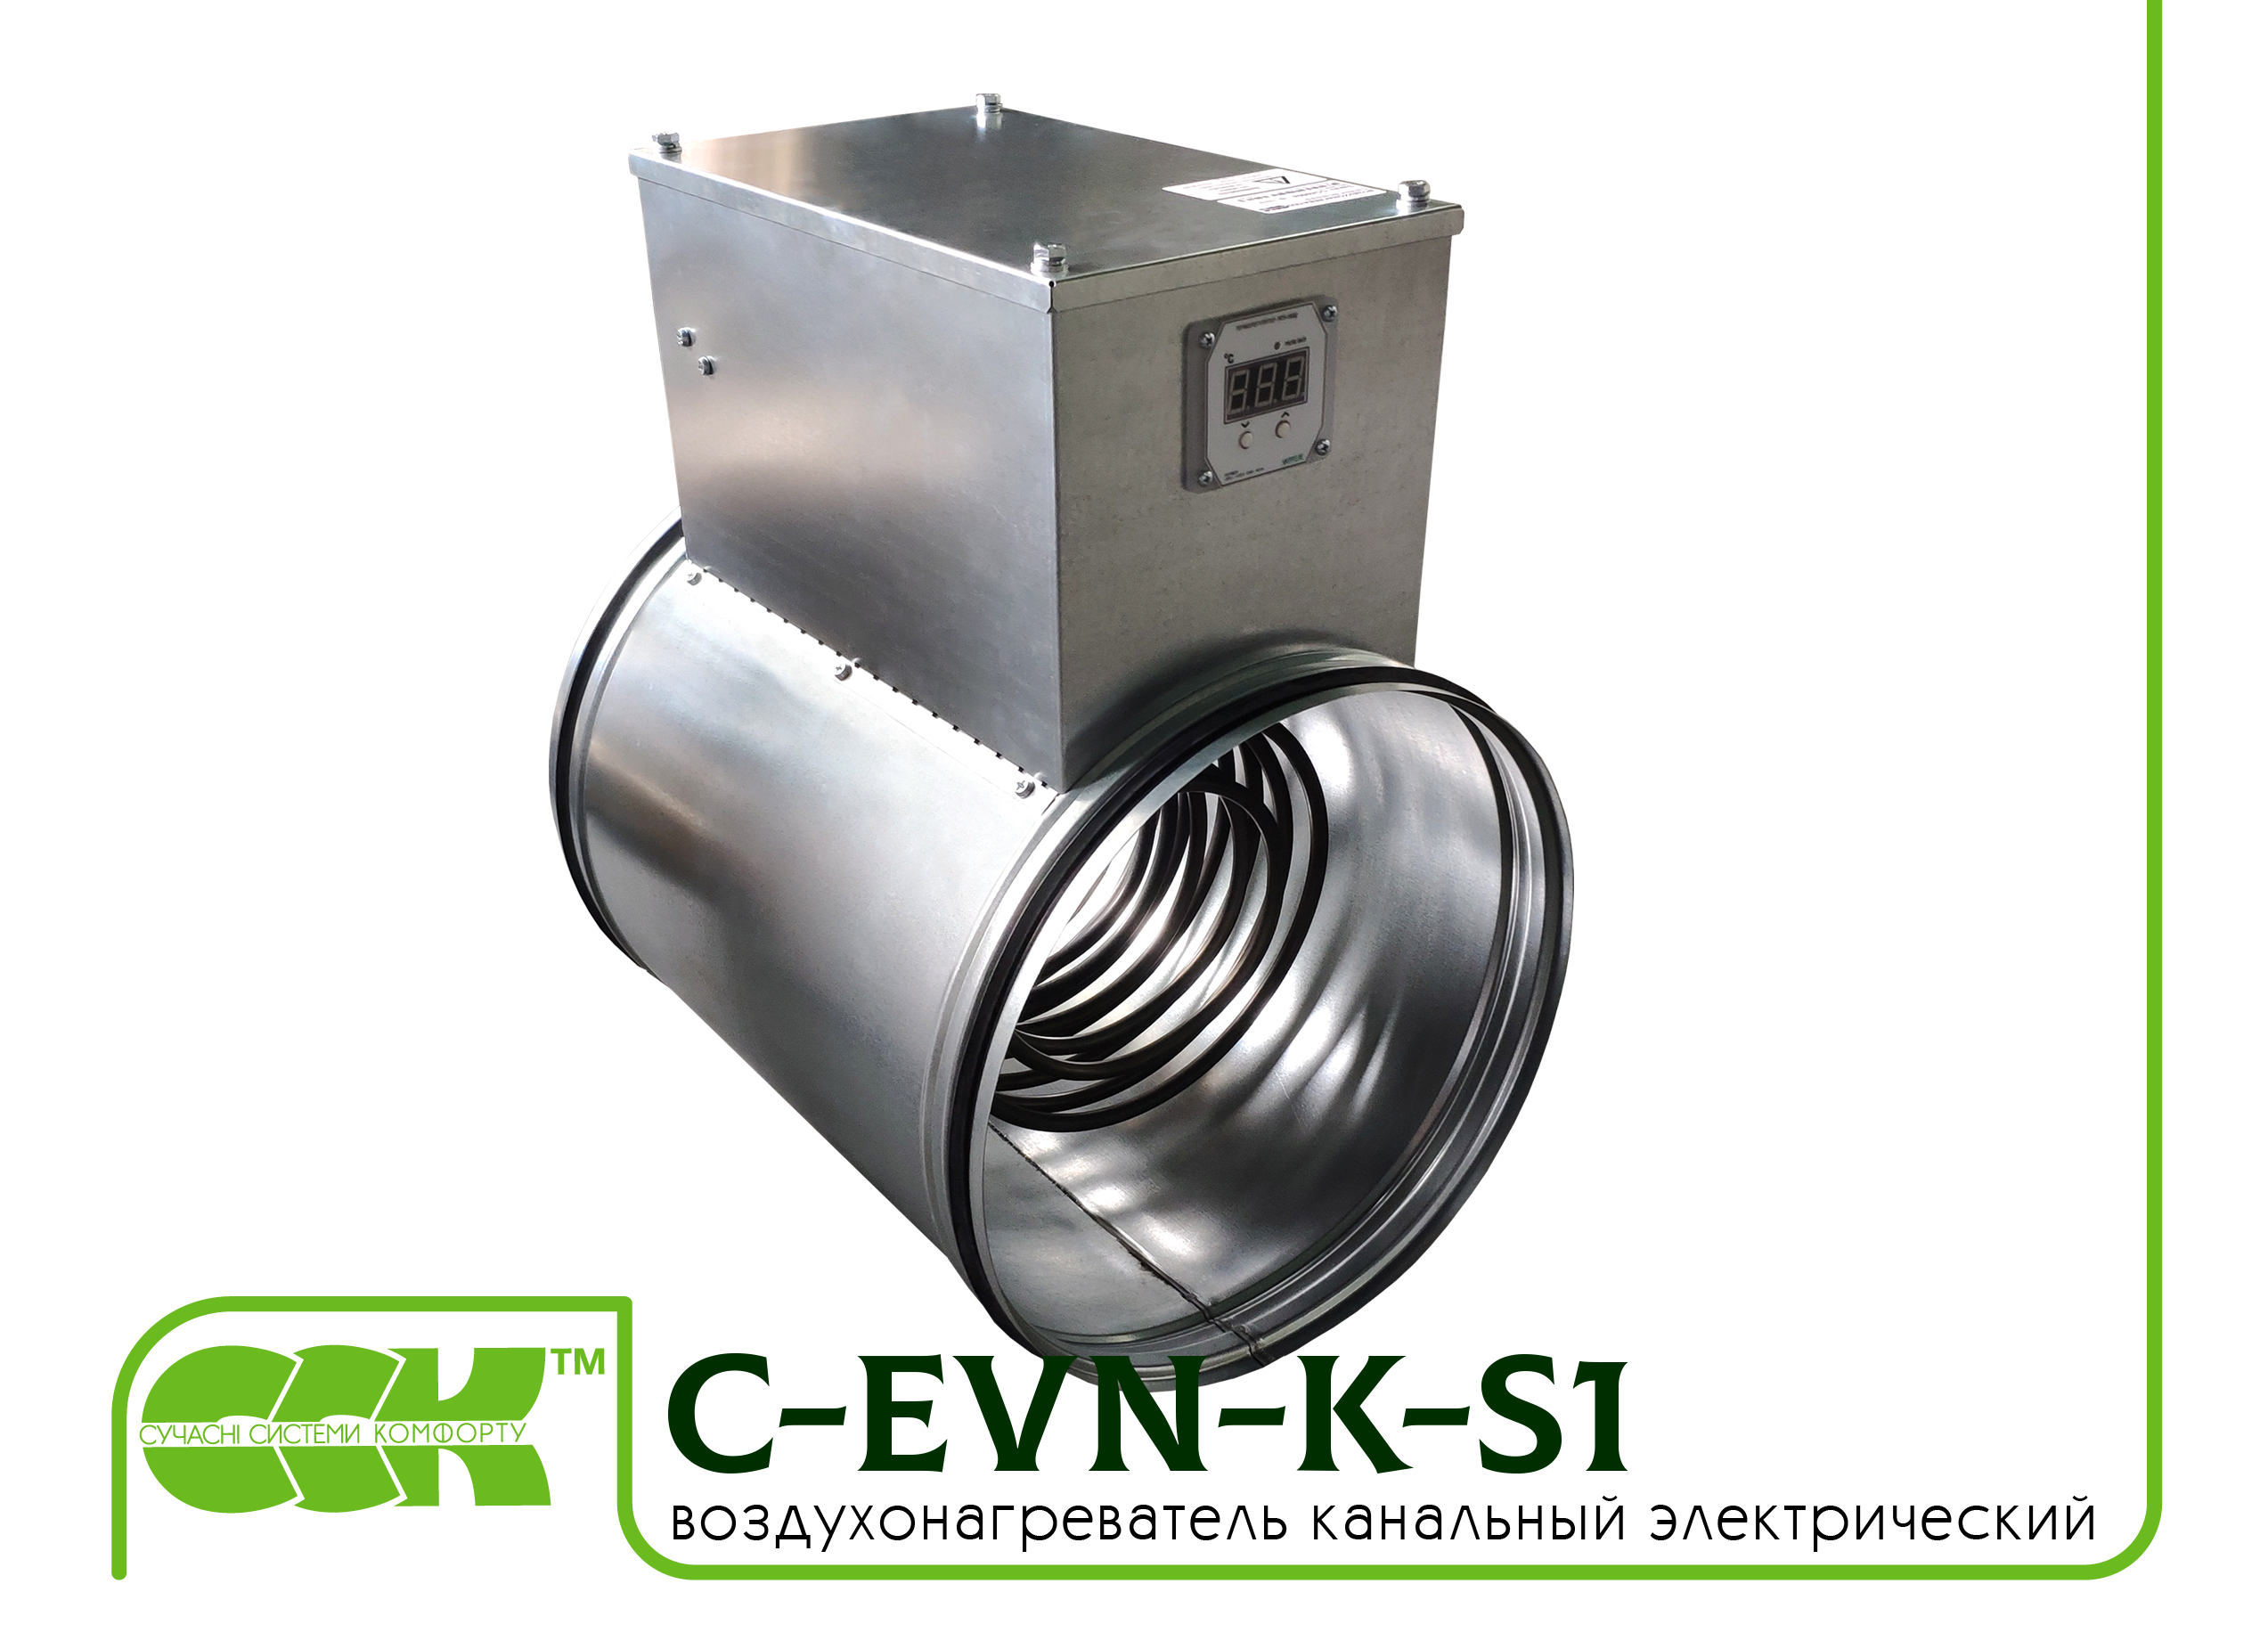 Воздухонагреватель канальный электрический для круглых каналов C-EVN-K-S1-160-6,0